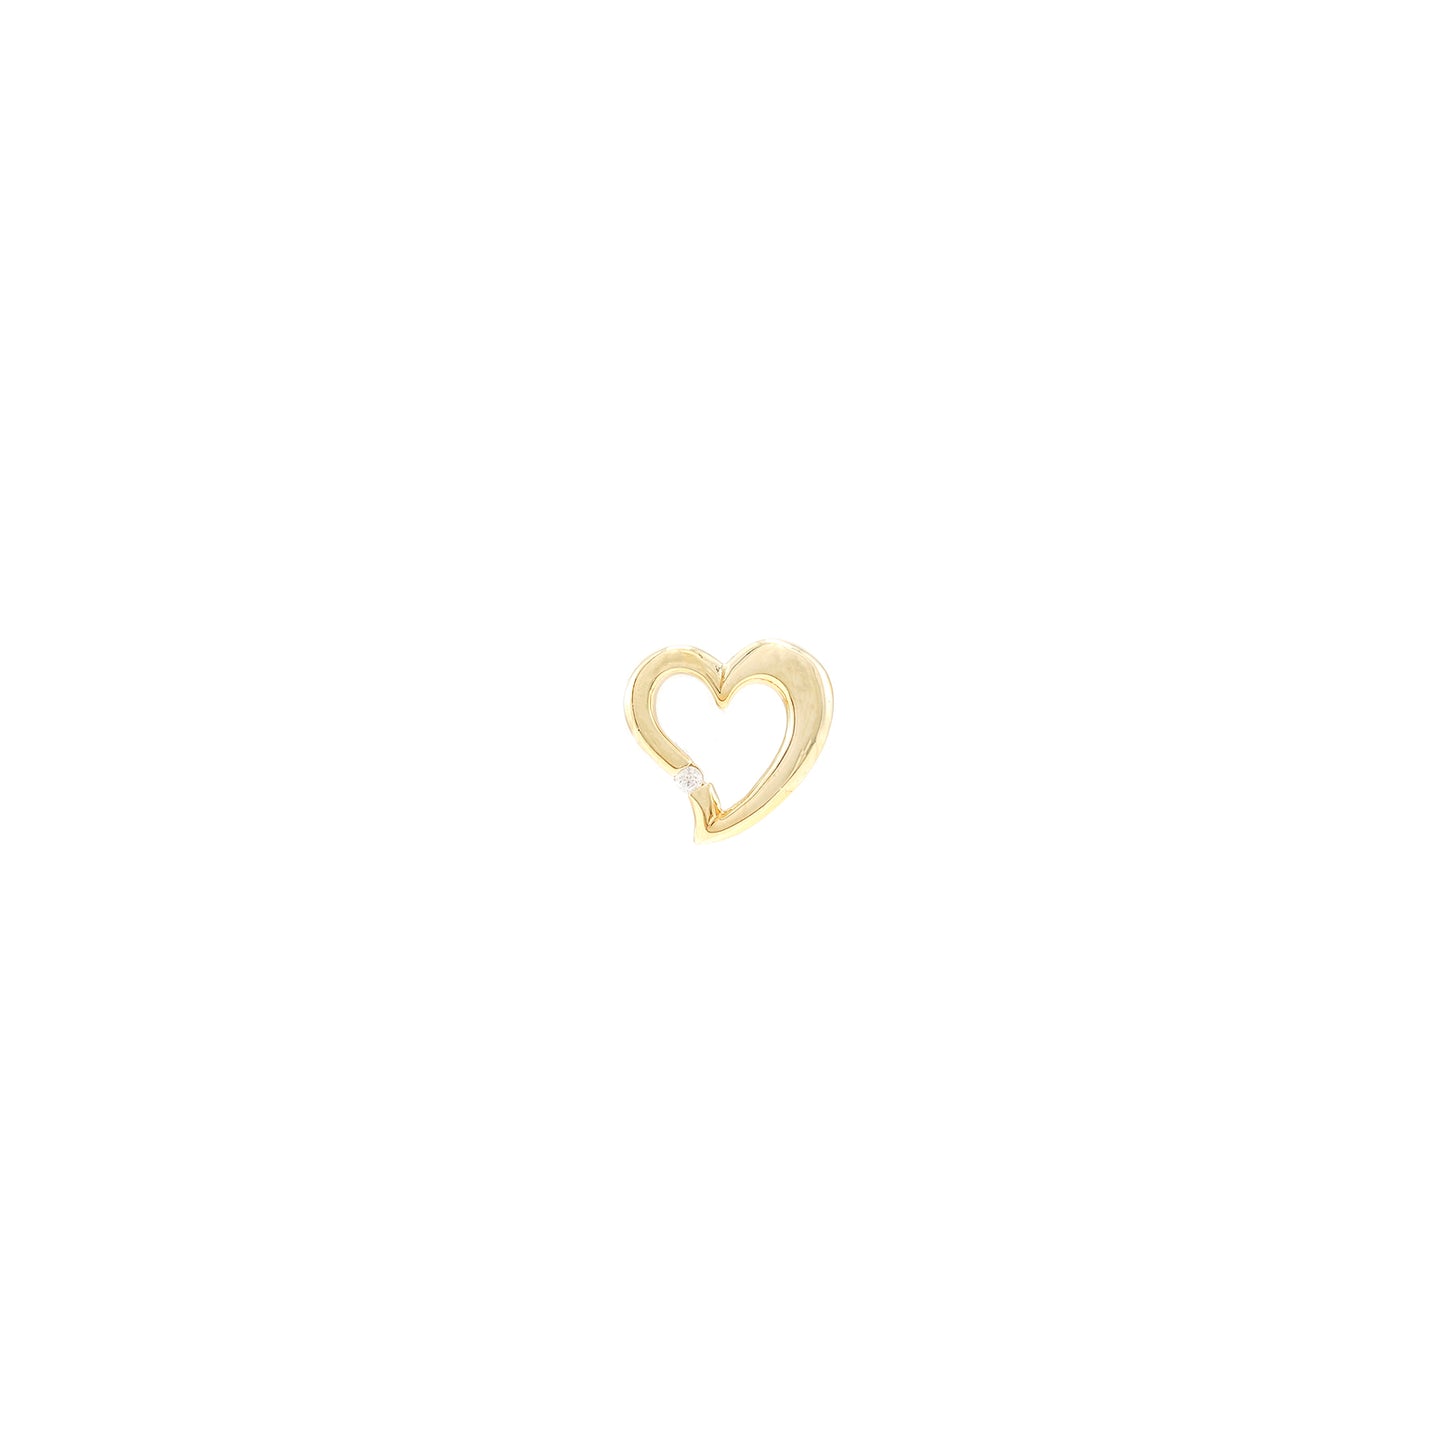 Herz Anhänger Zirkonia Gelbgold 8K Damenschmuck Goldanhänger heart pendant Liebe Love